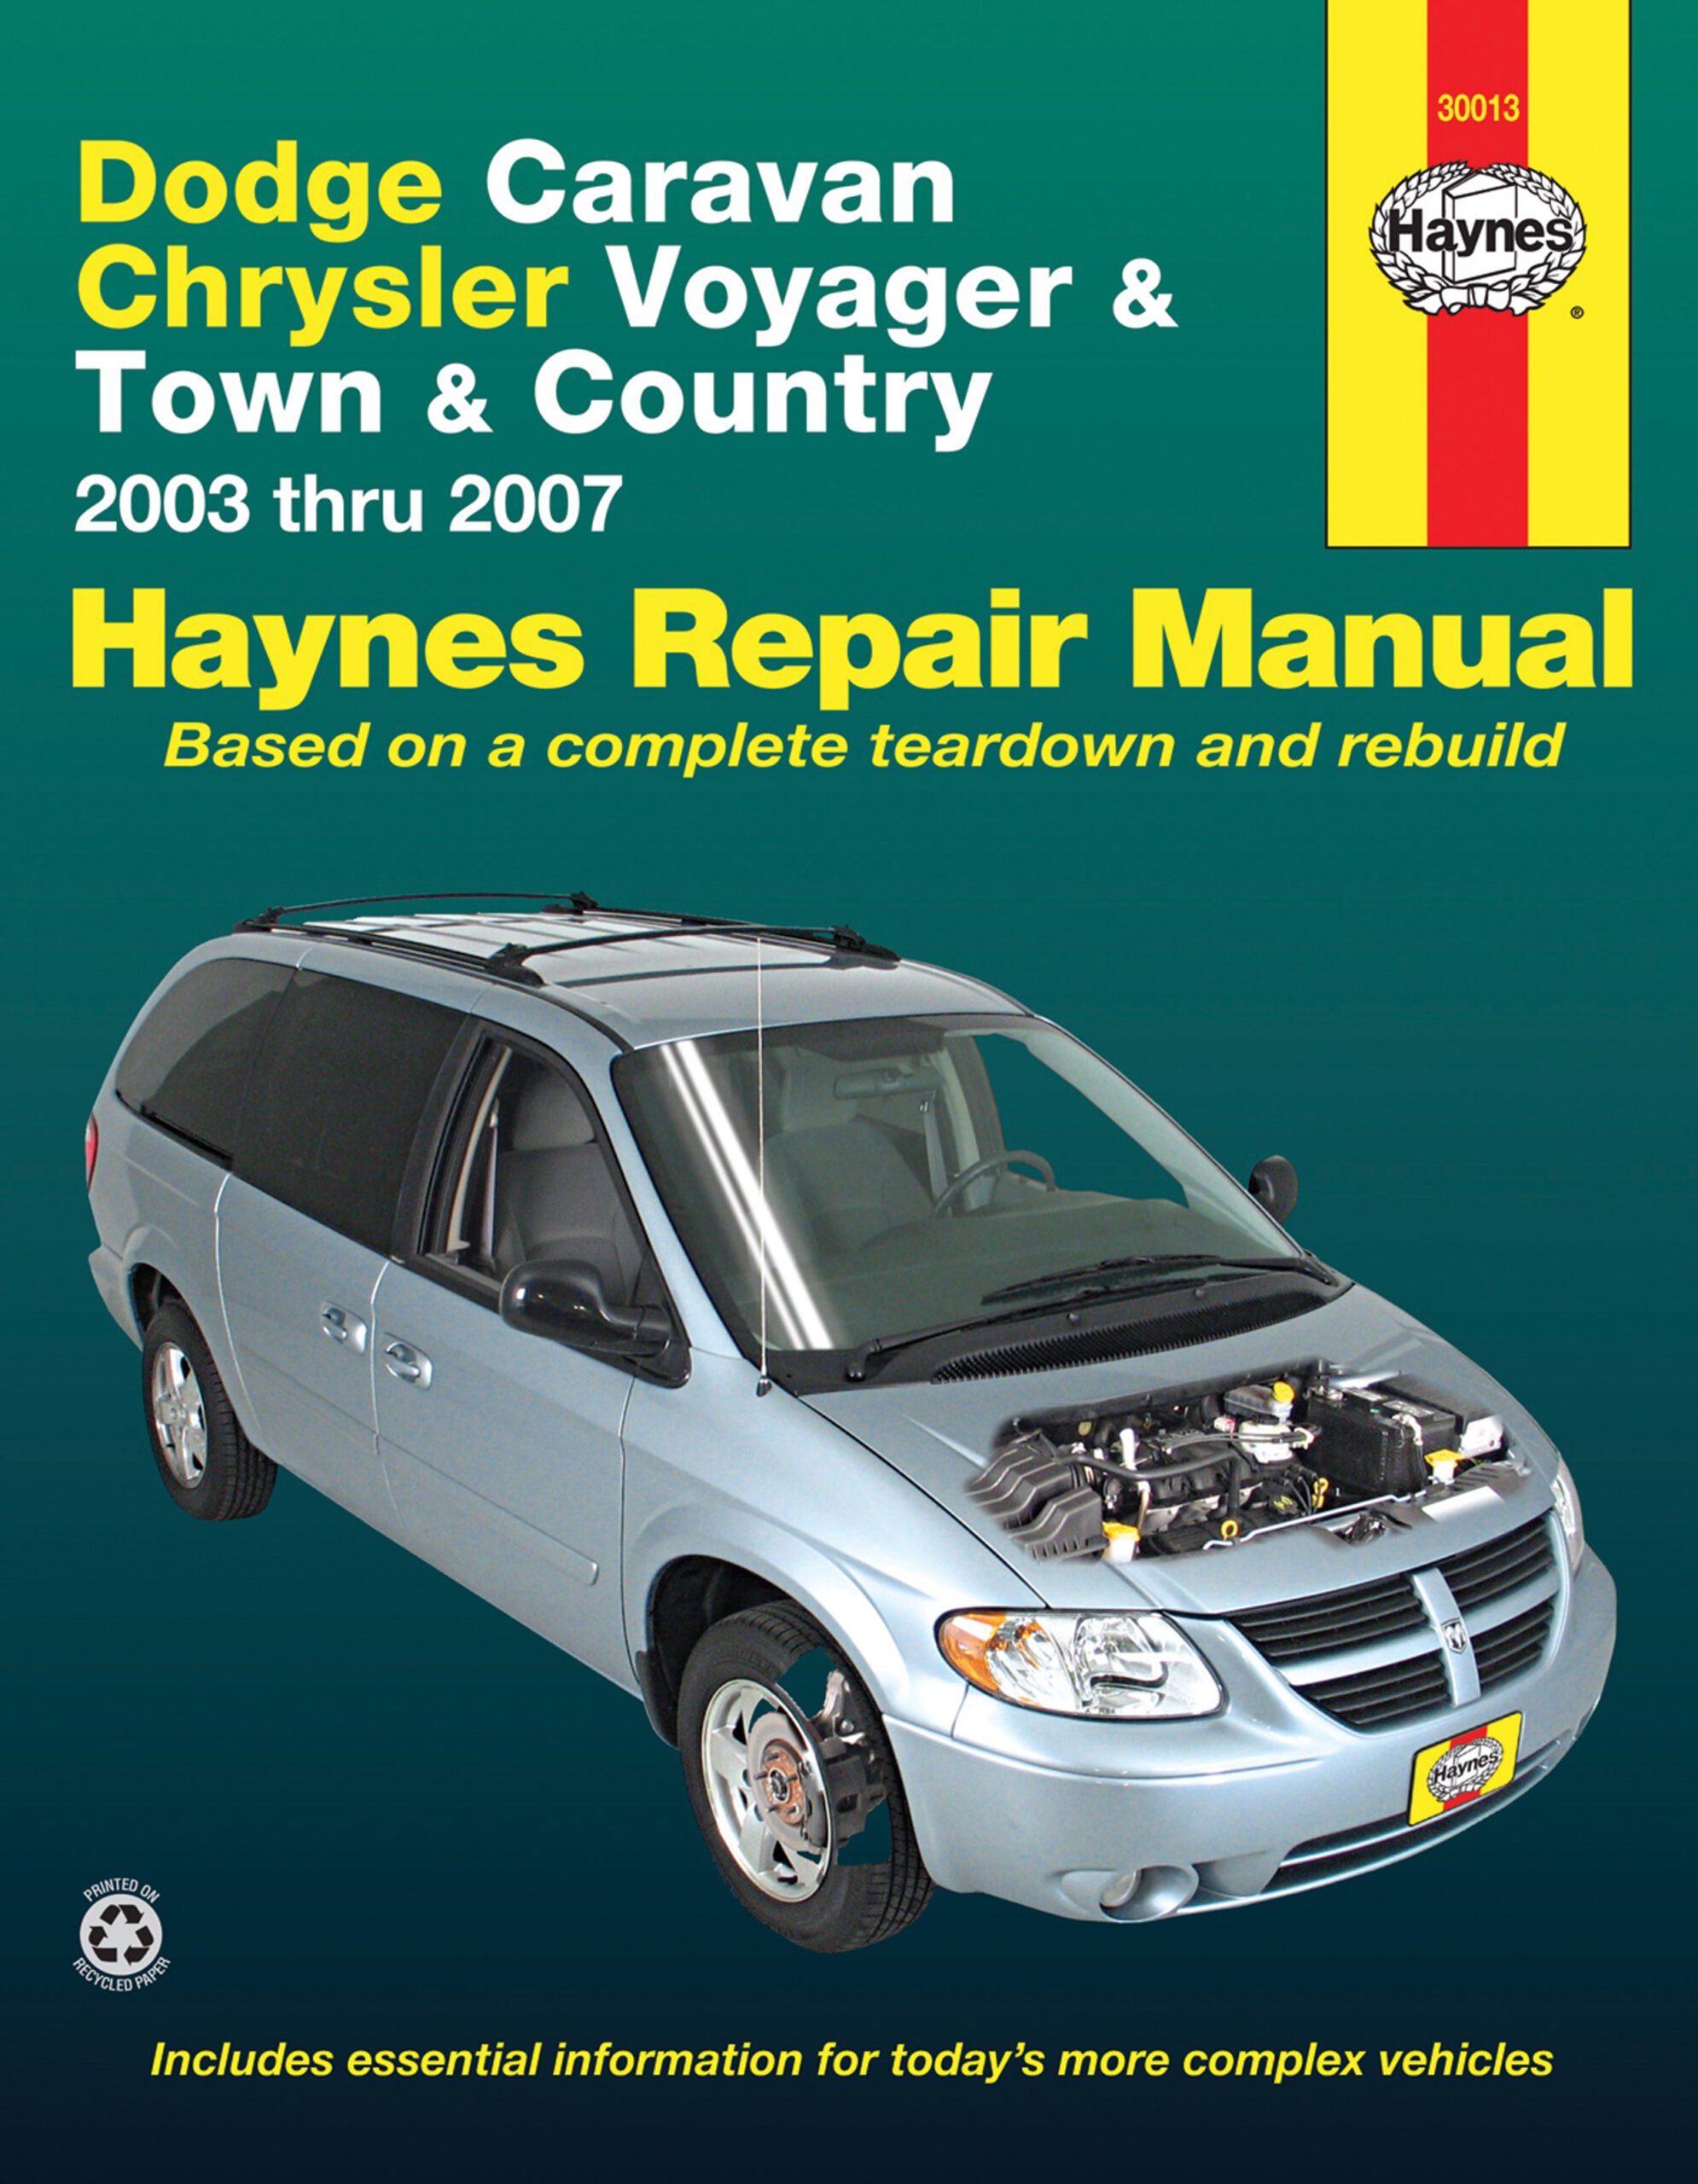 Repairing your Chrysler Voyager